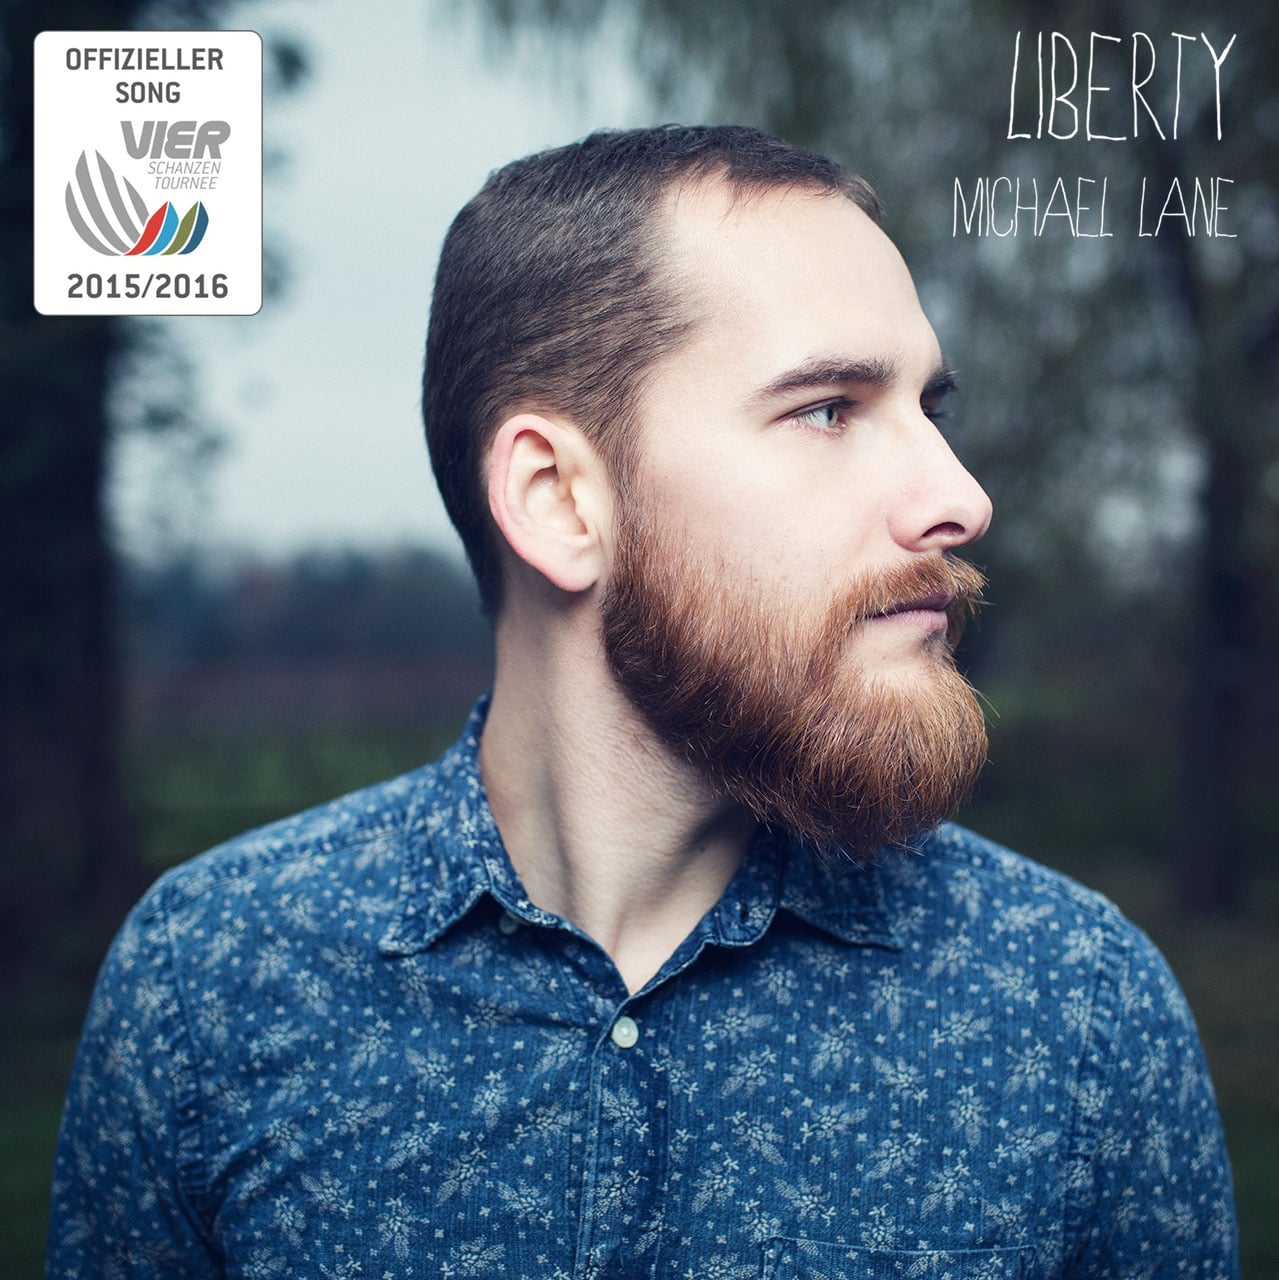 "Liberty" von Michael Lane ist der offizielle Song der Vierschanzentournee